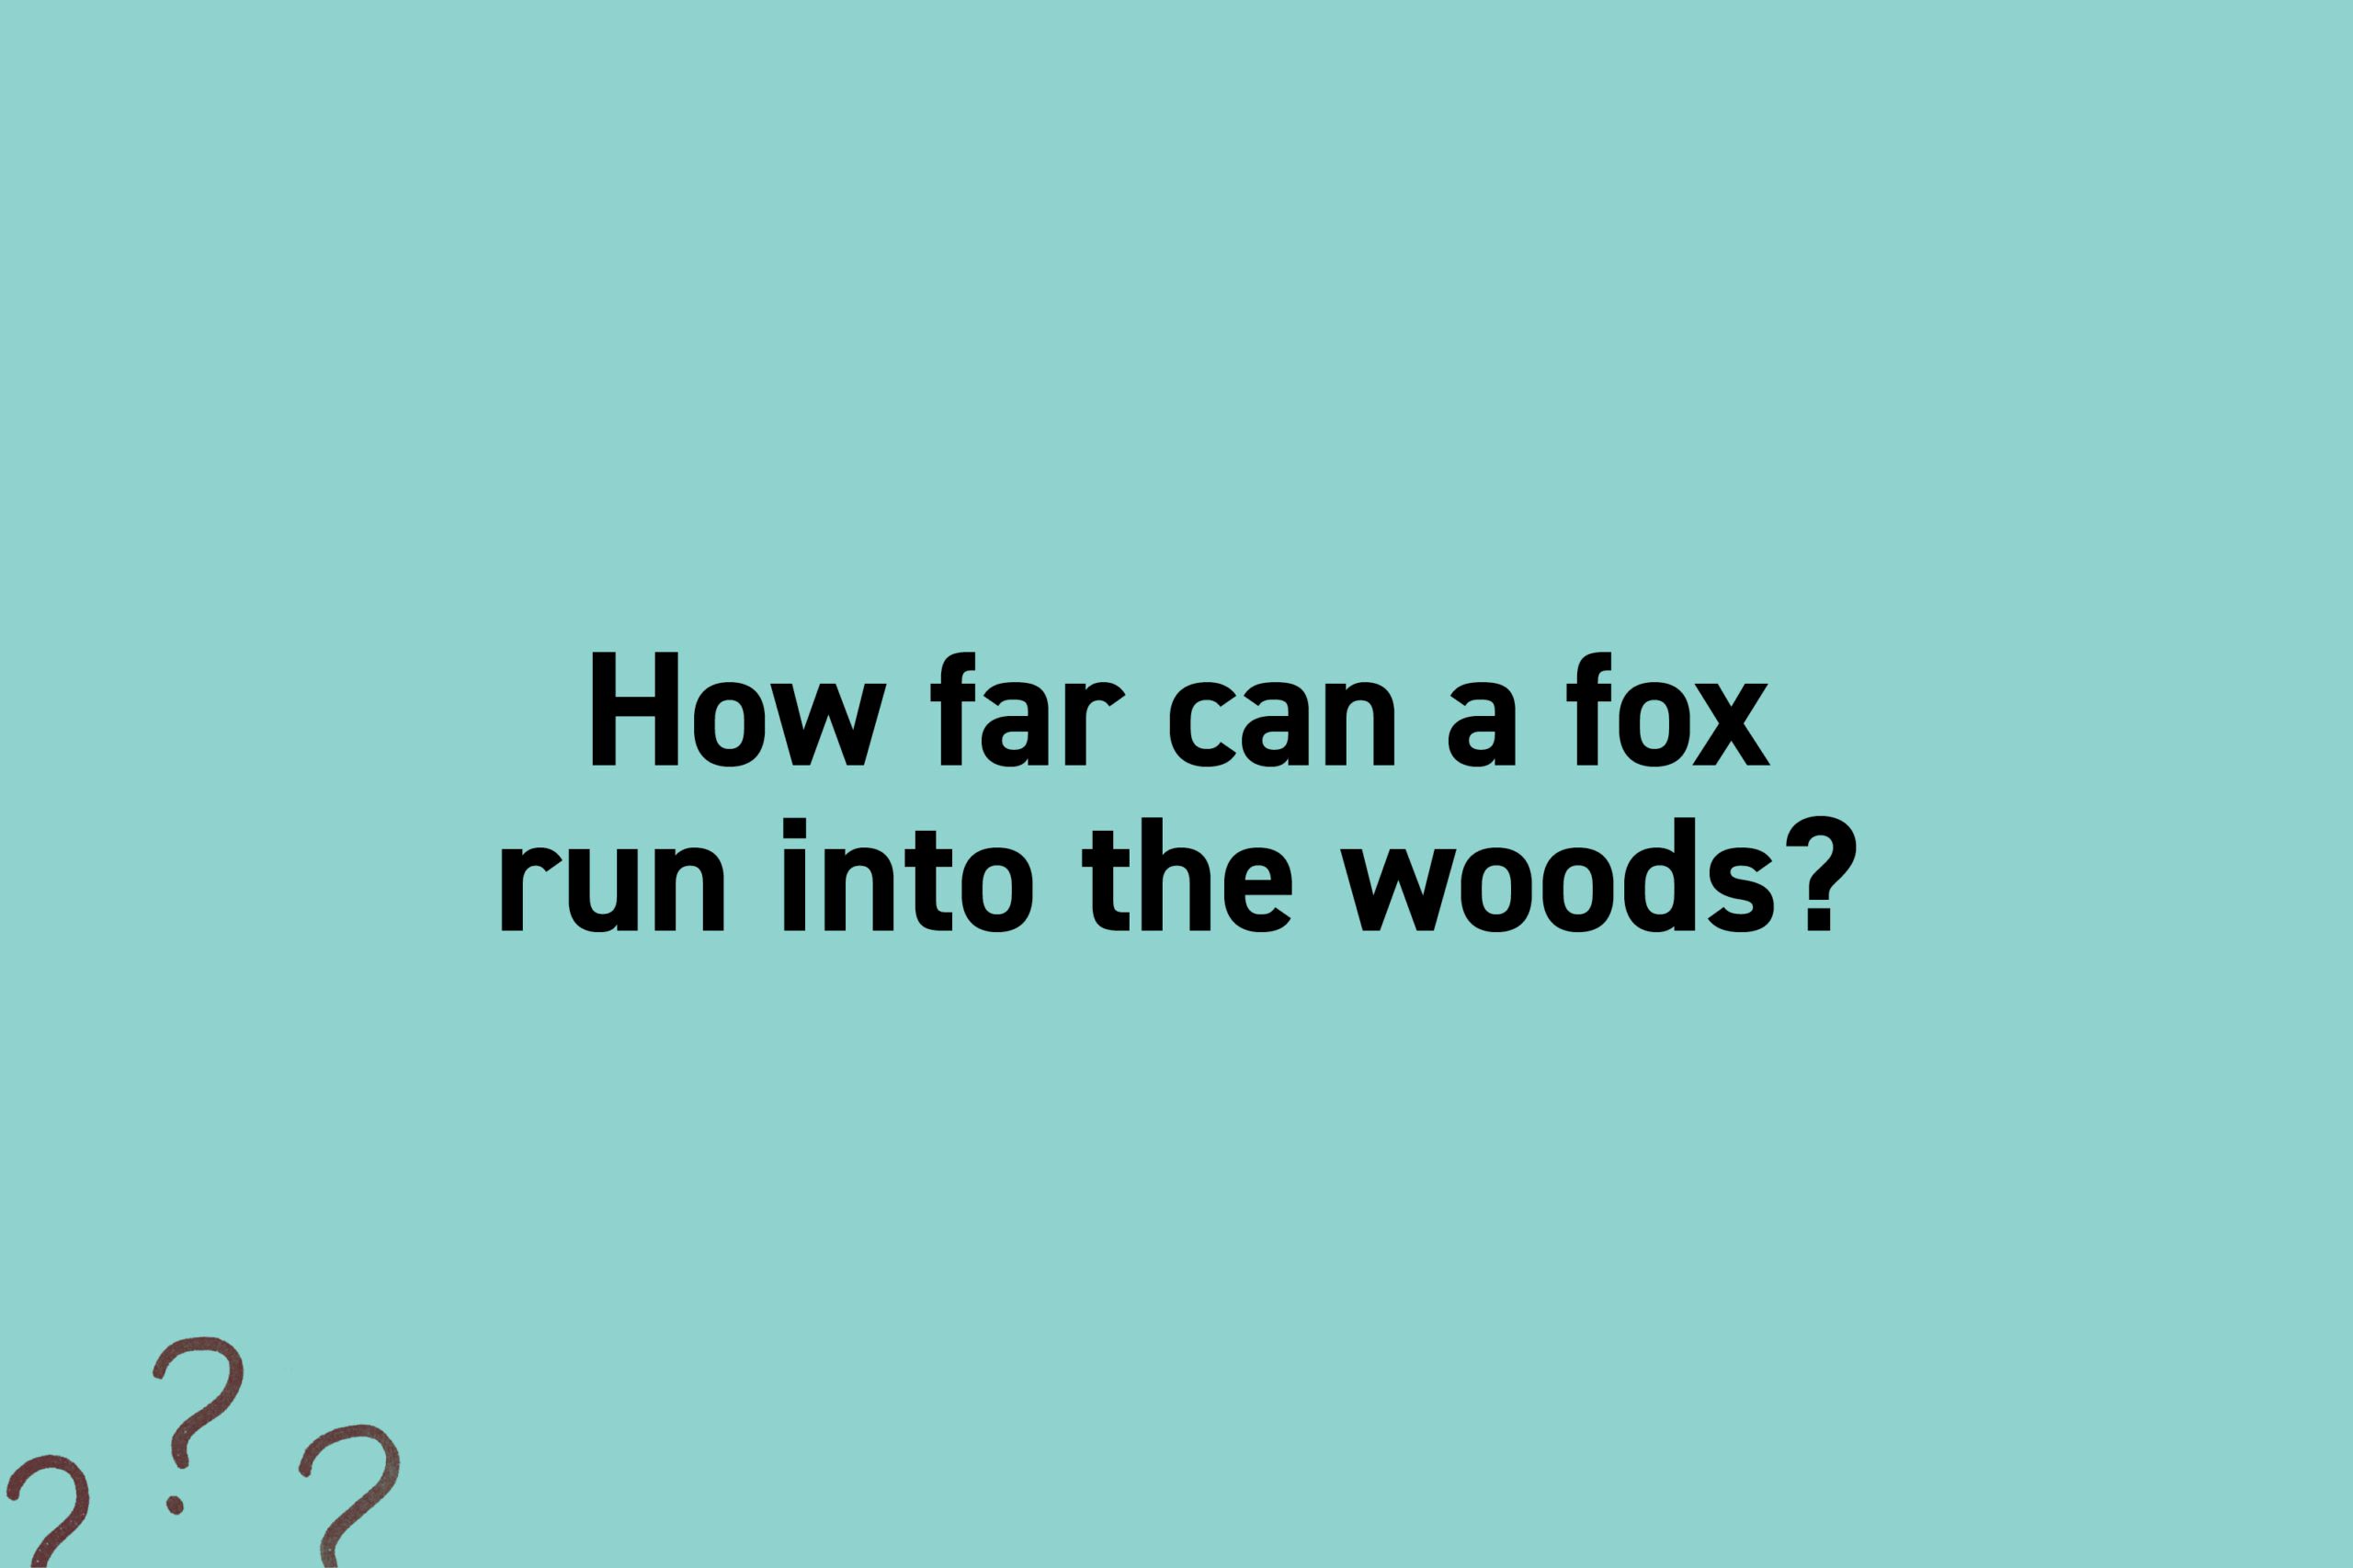 How far can a fox run into the woods?